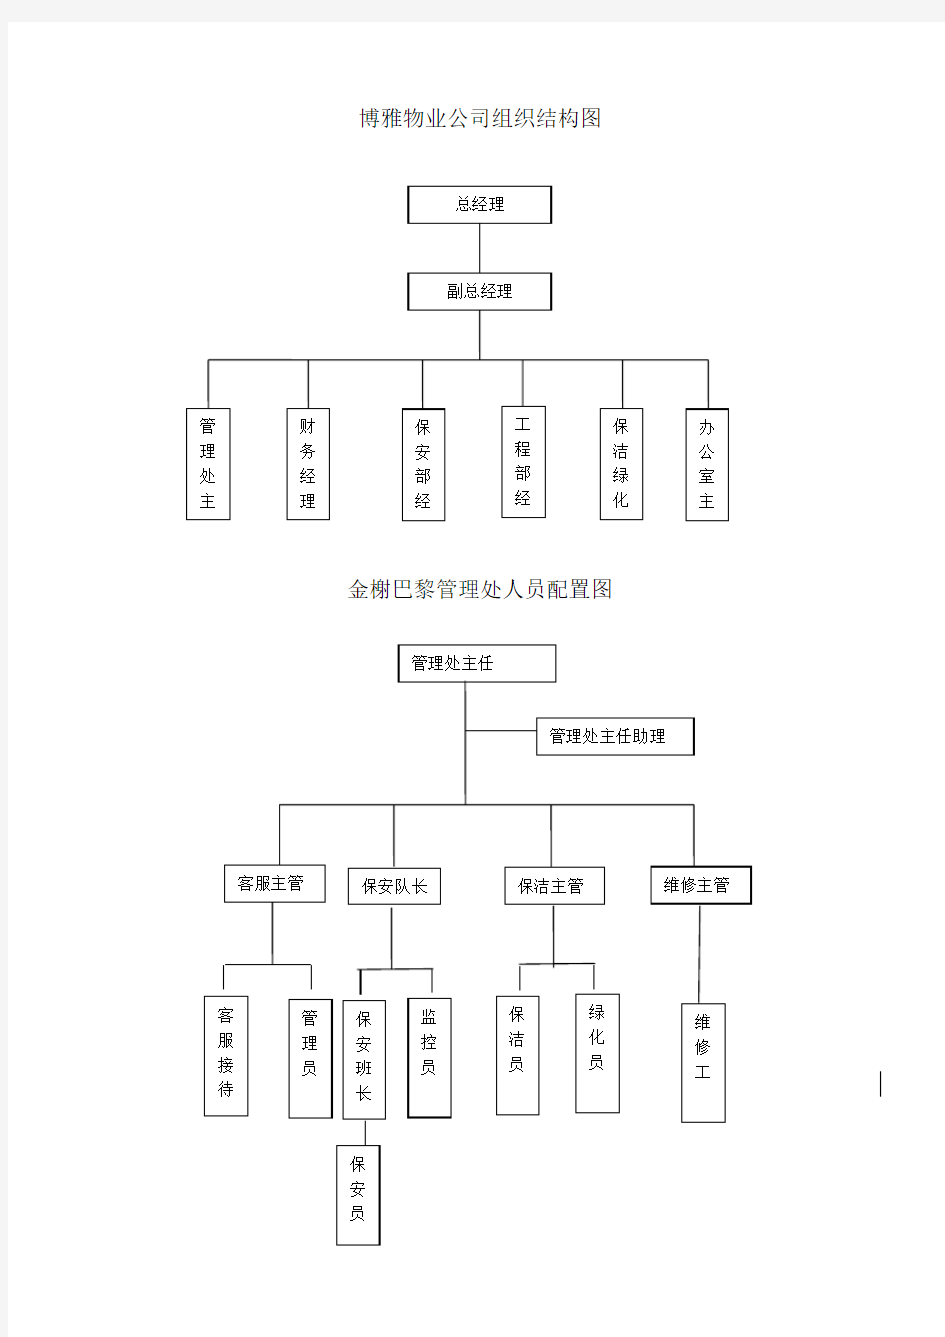 xx物业公司组织结构图